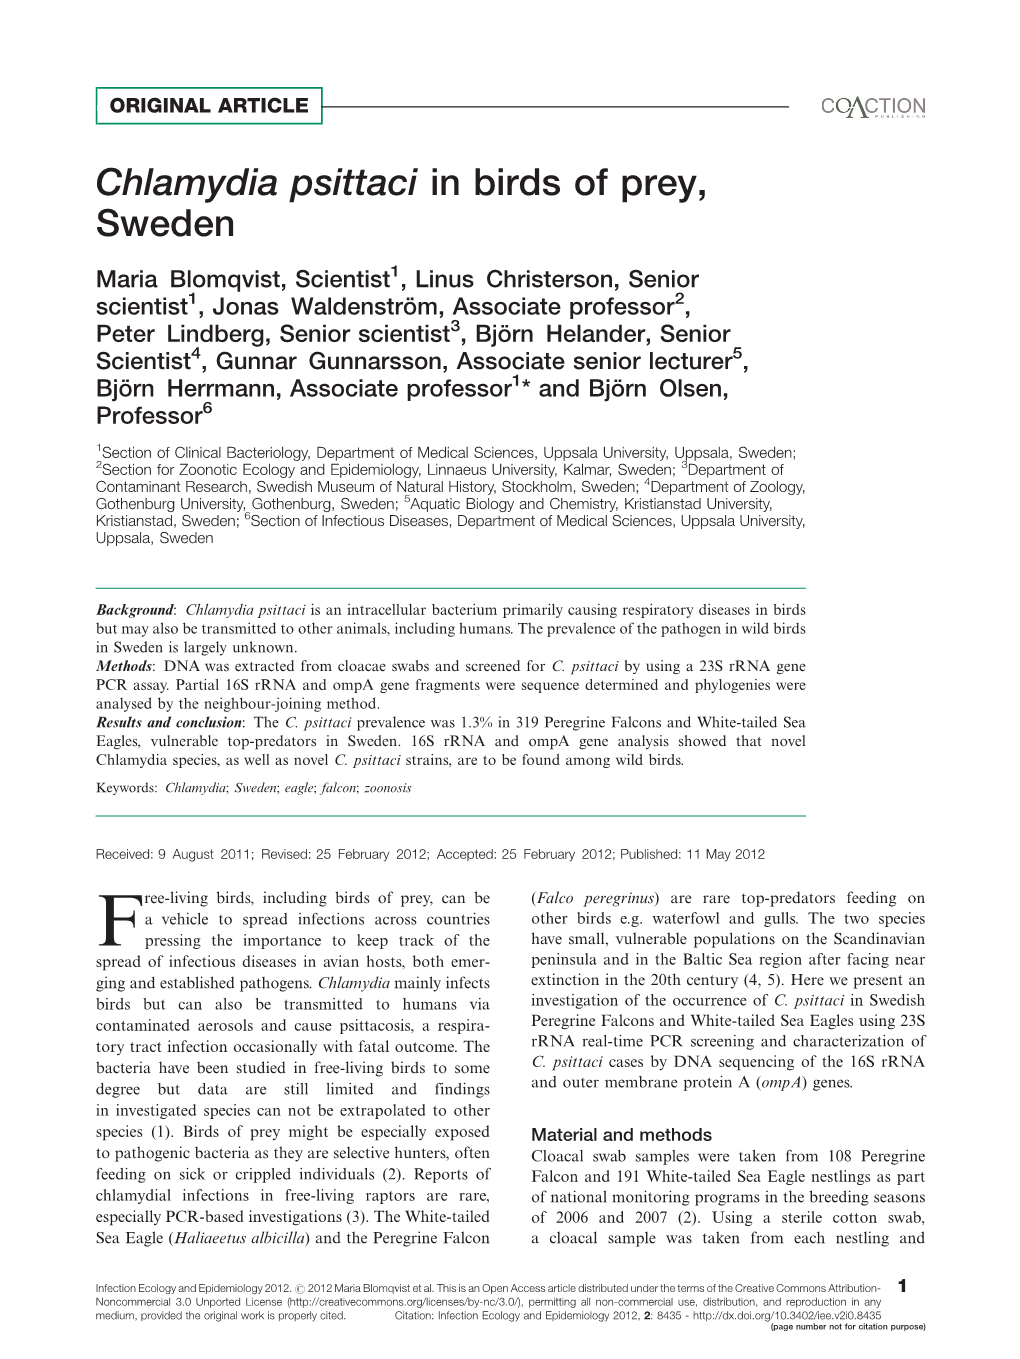 Chlamydia Psittaci in Birds of Prey, Sweden